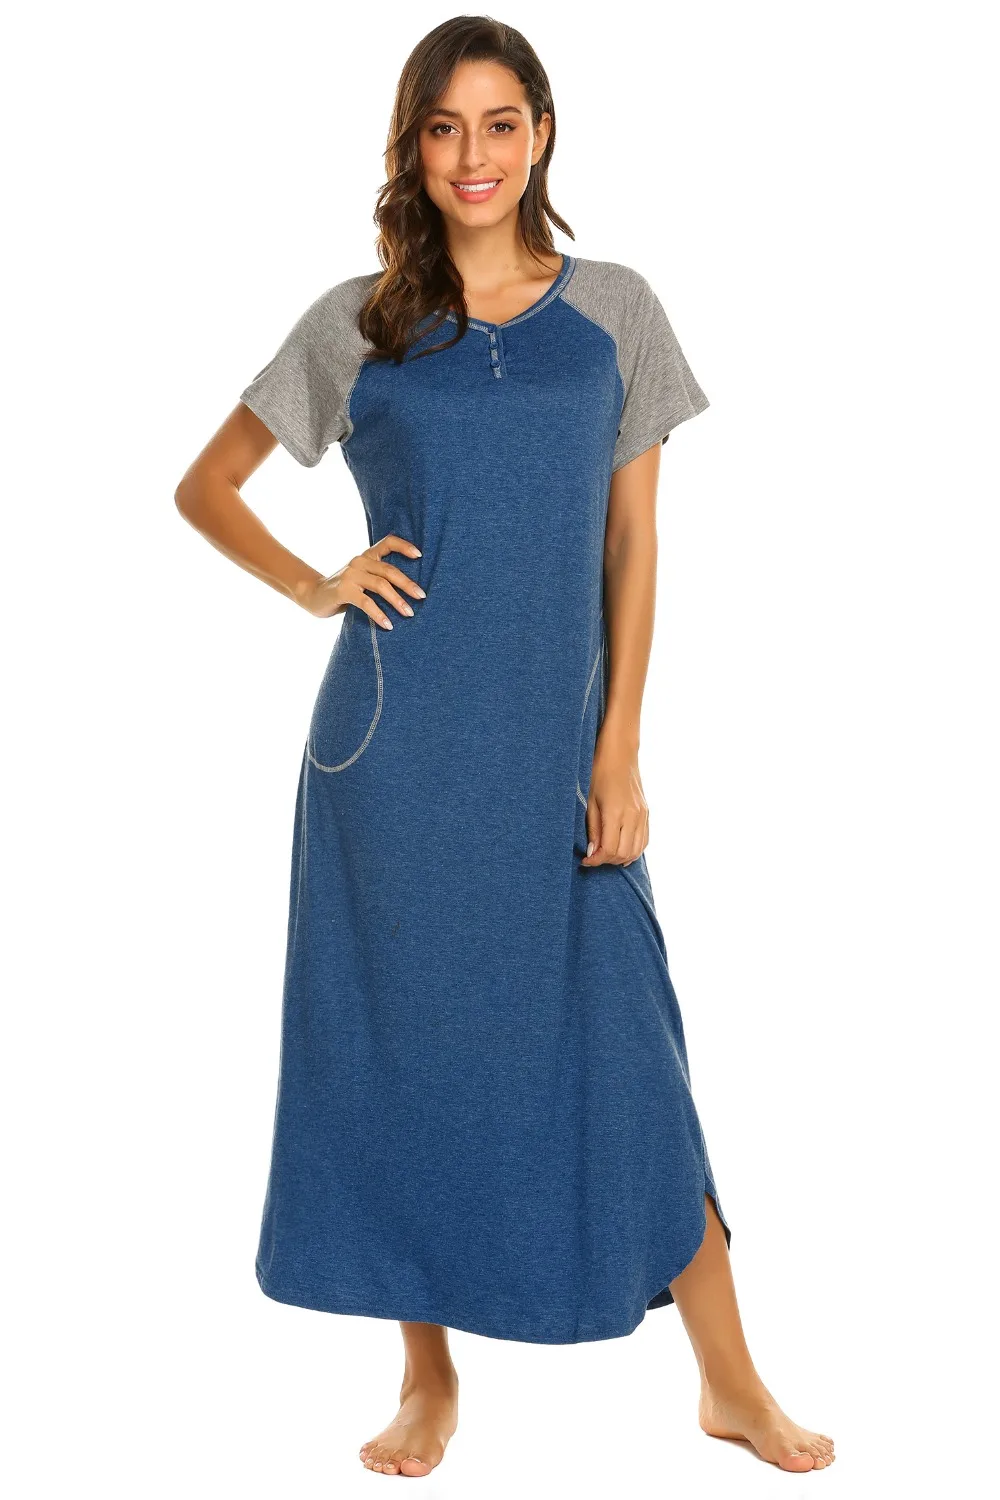 Ekouaer Для женщин Ночная сорочка пижамы платье v-образным вырезом короткий рукав Лоскутная Длинная Ночная сорочка ночная рубашка мягкая